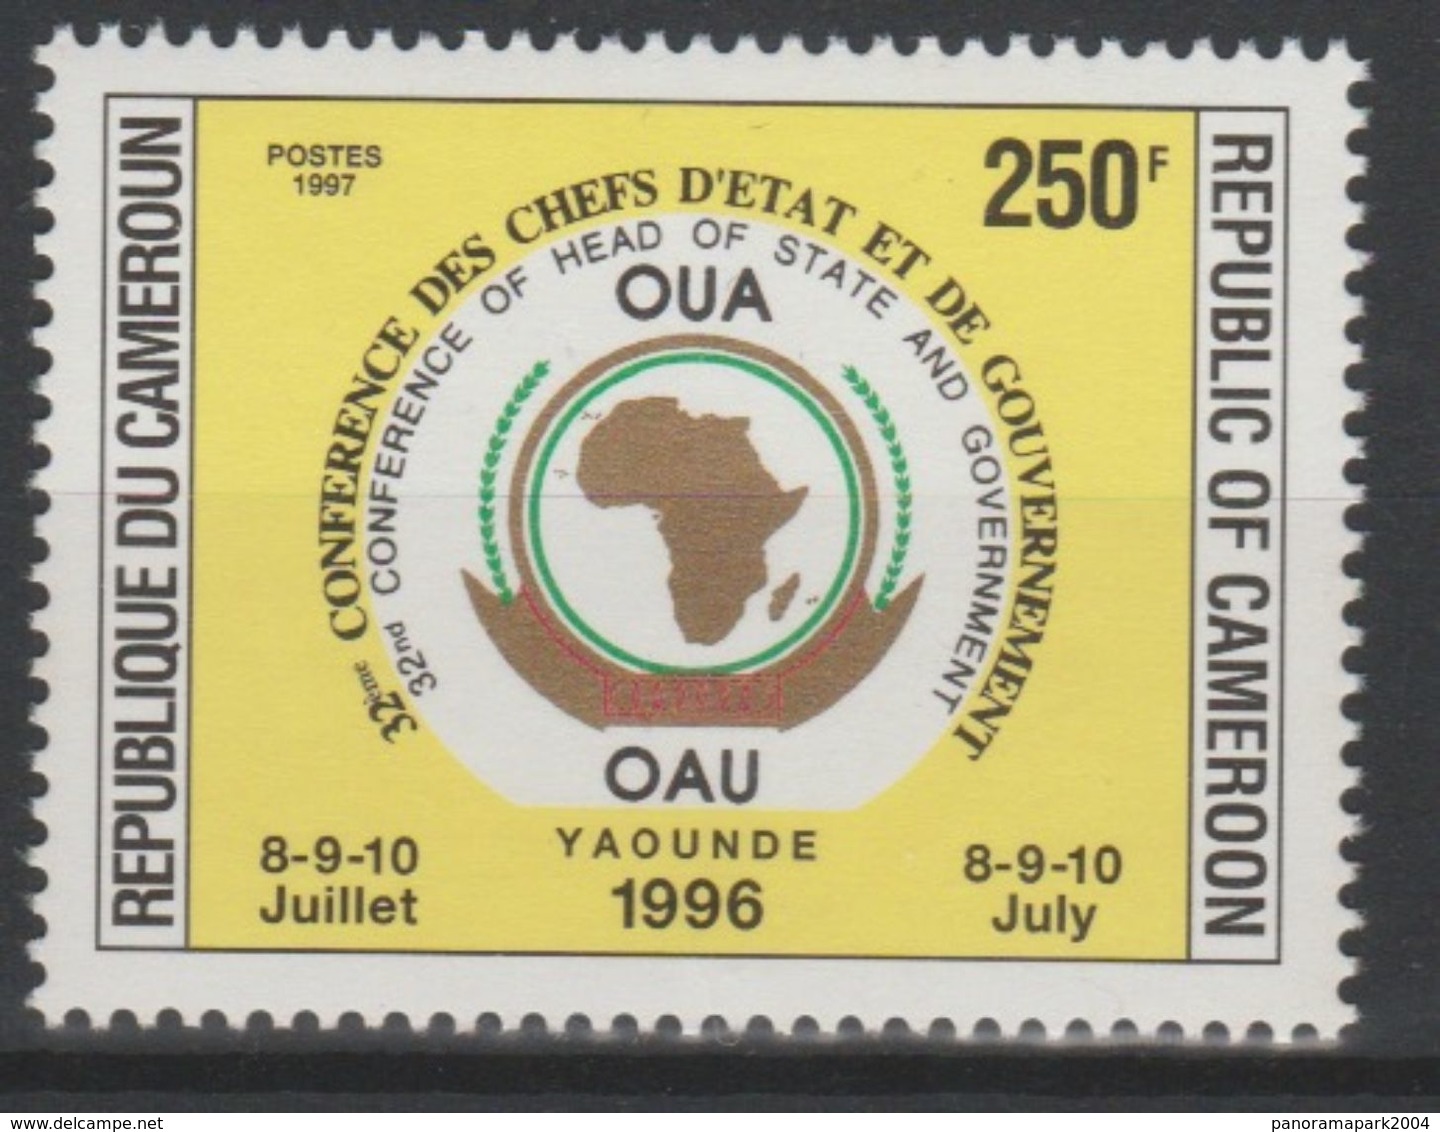 Cameroun Cameroon Kamerun 1997 250F Mi. 1223 OAU OUA Map Landkarte Carte Conférence Chefs D'Etat 8-9-10 Juillet - Kamerun (1960-...)